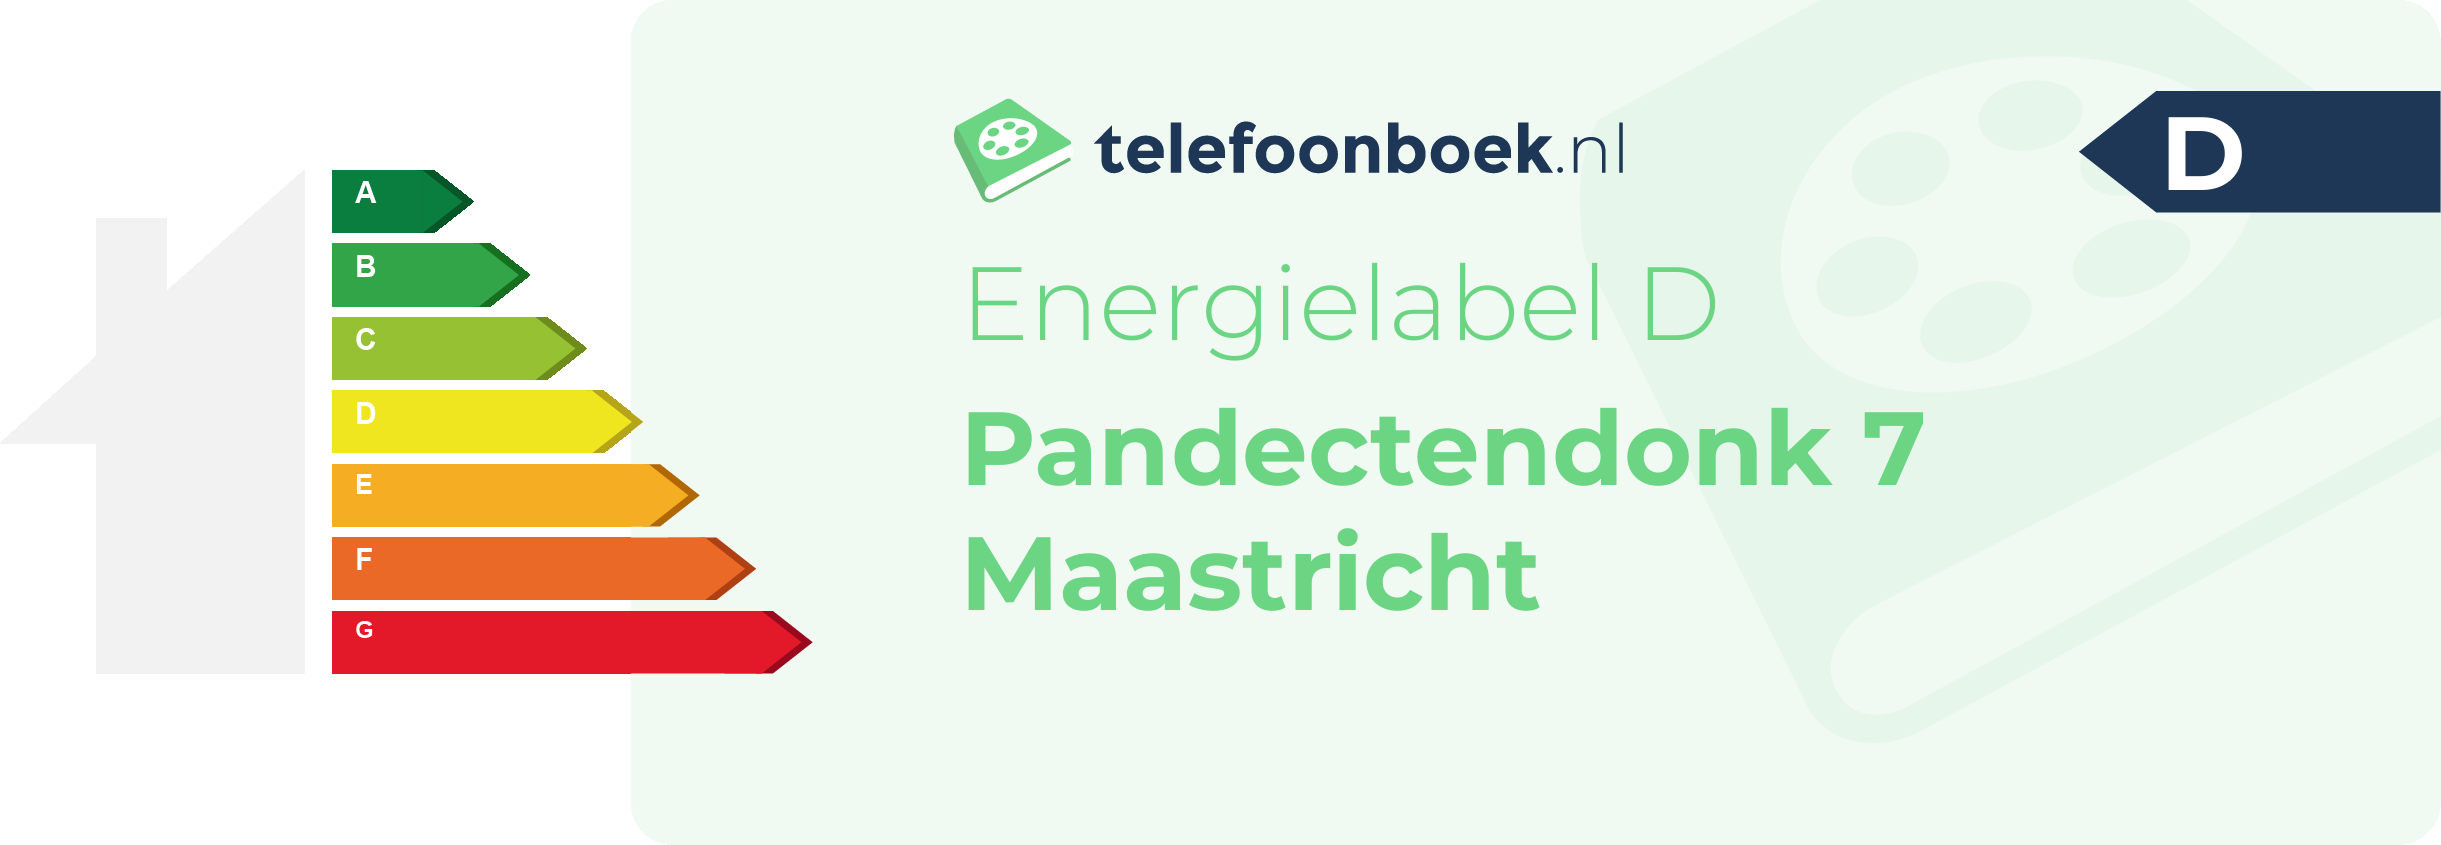 Energielabel Pandectendonk 7 Maastricht